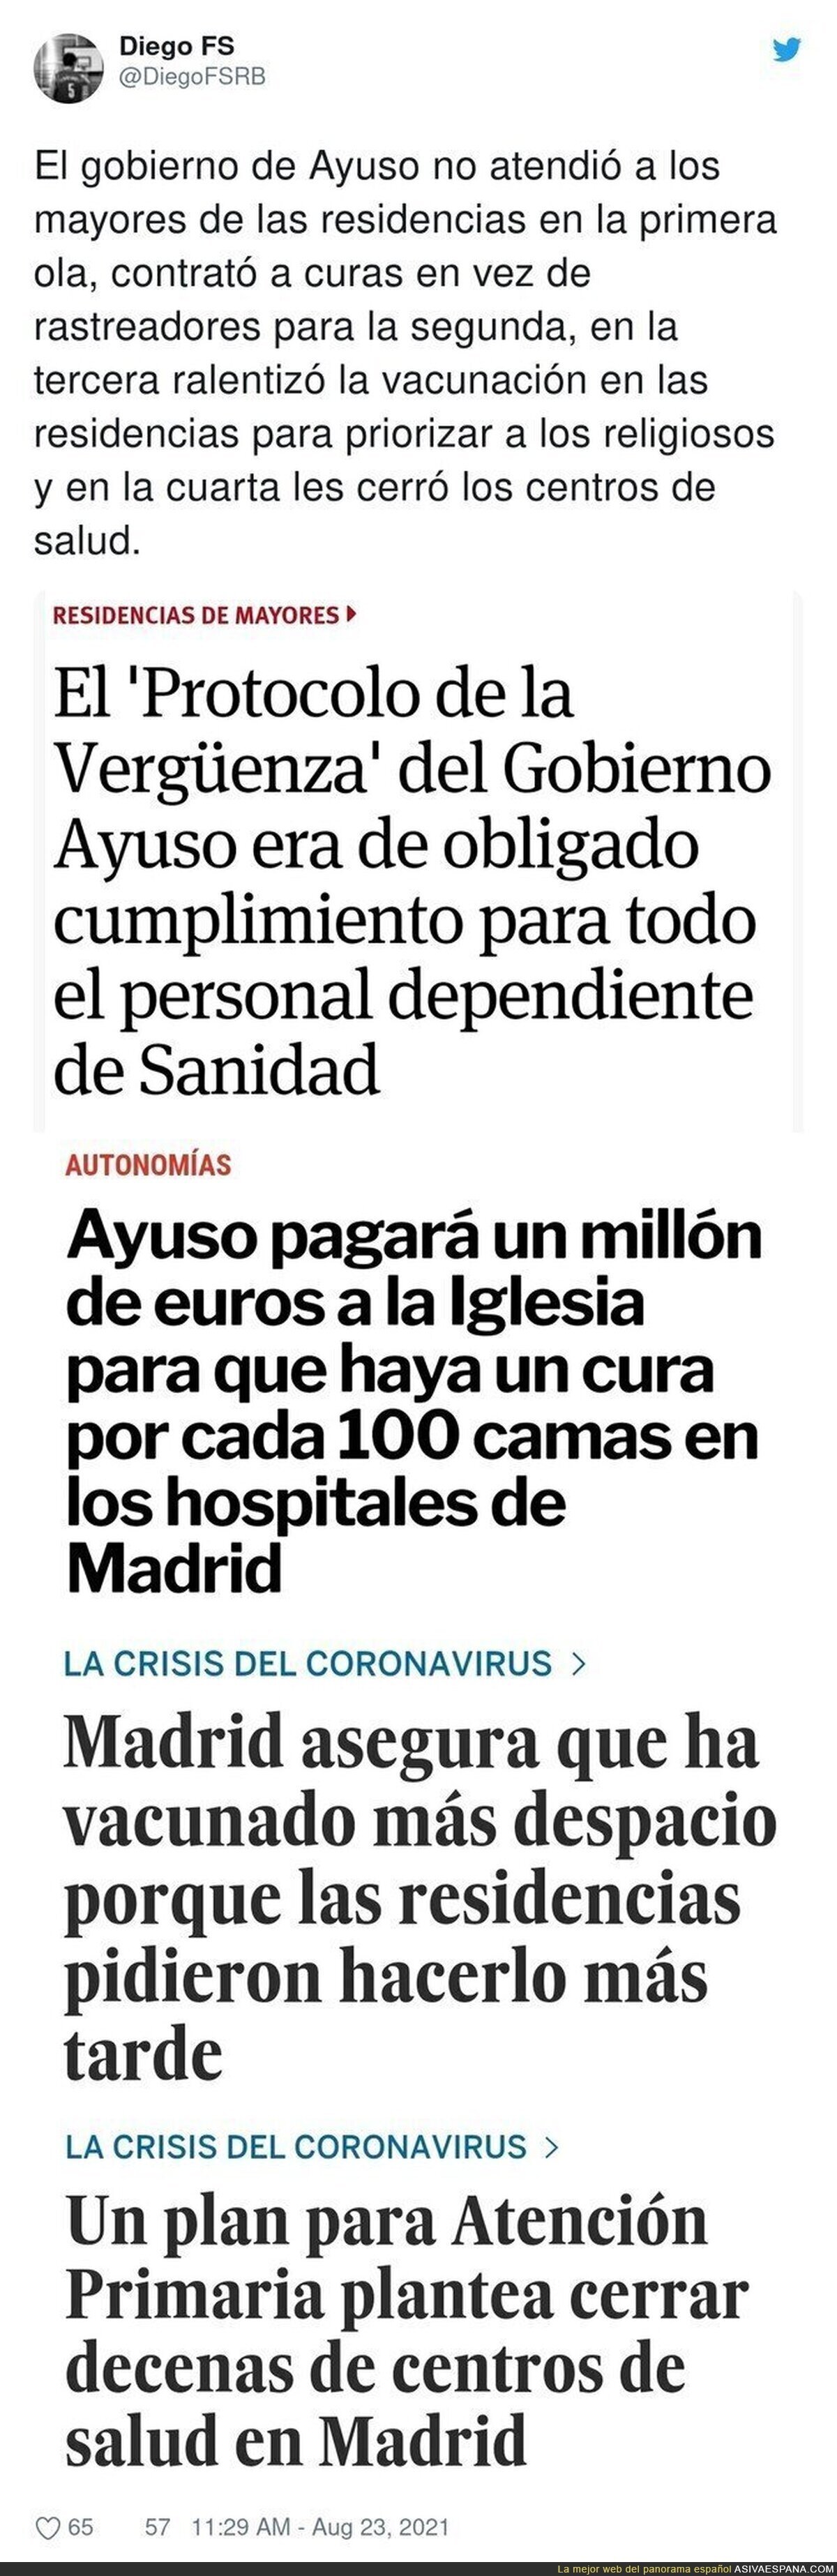 Cronología de la gestión de Isabel Díaz Ayuso en Madrid durante la pandemia que debería terminar con varios en la cárcel